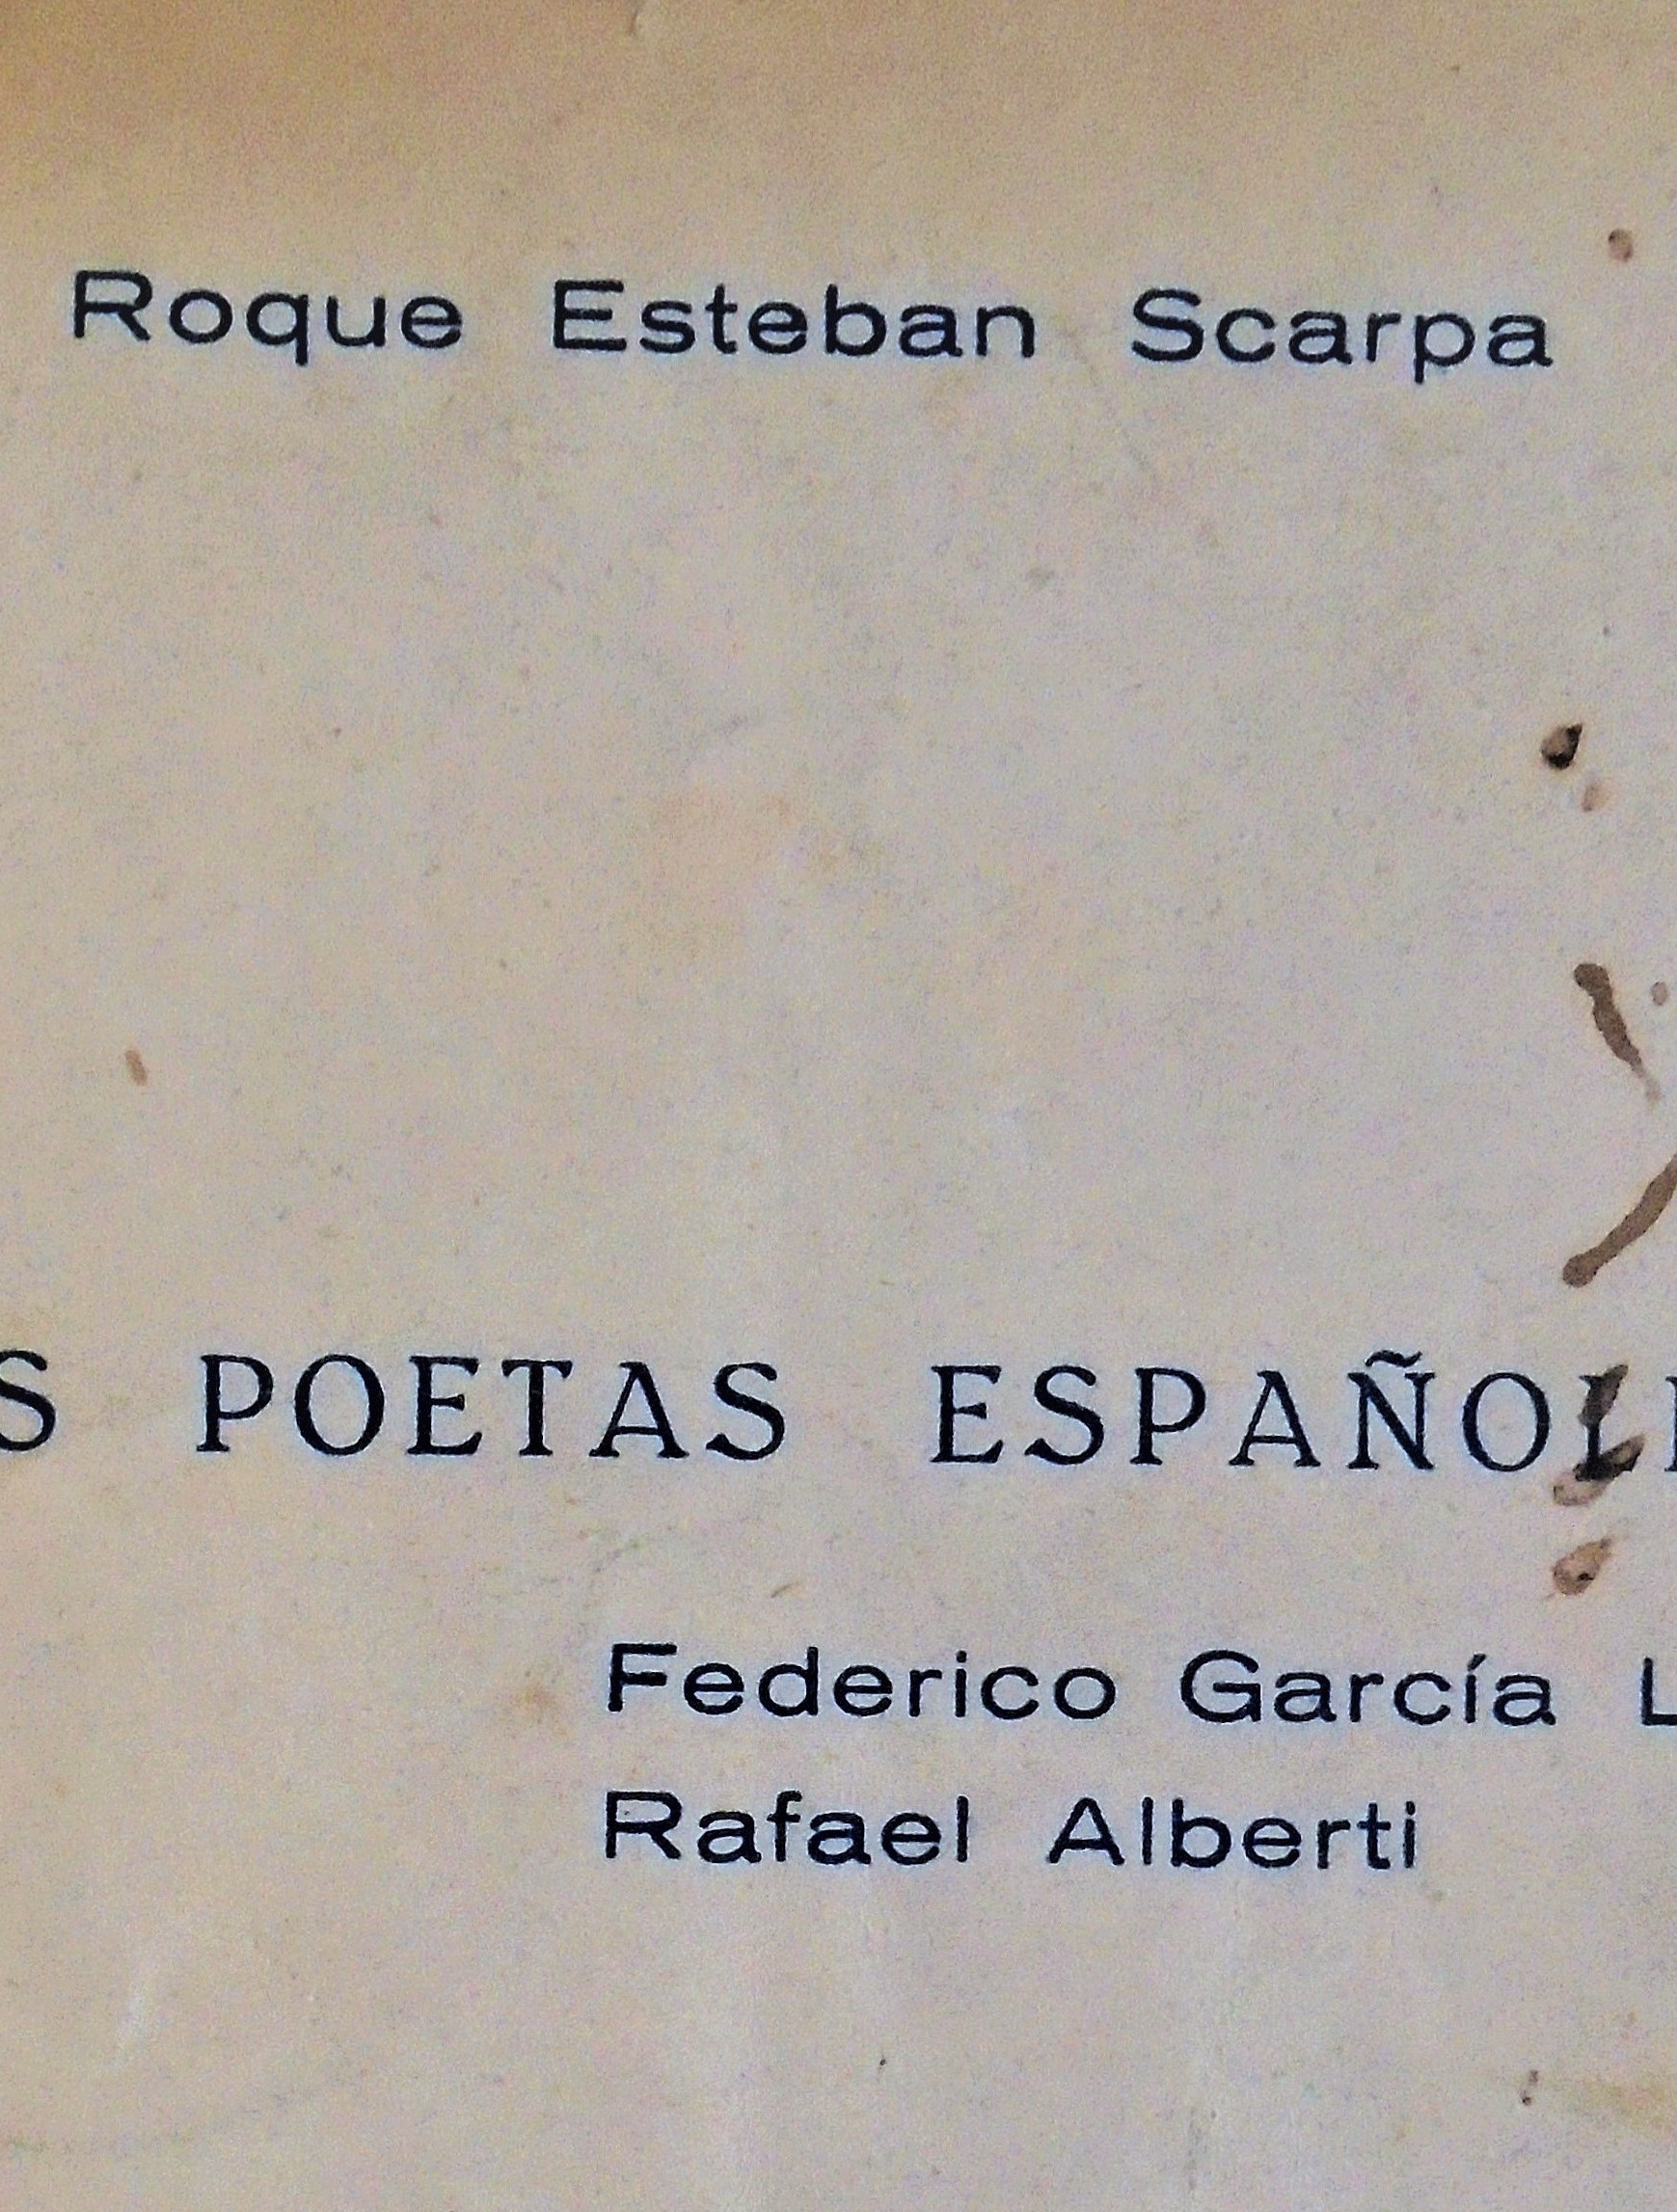 Dos poetas españoles - Roque Esteban Scarpa